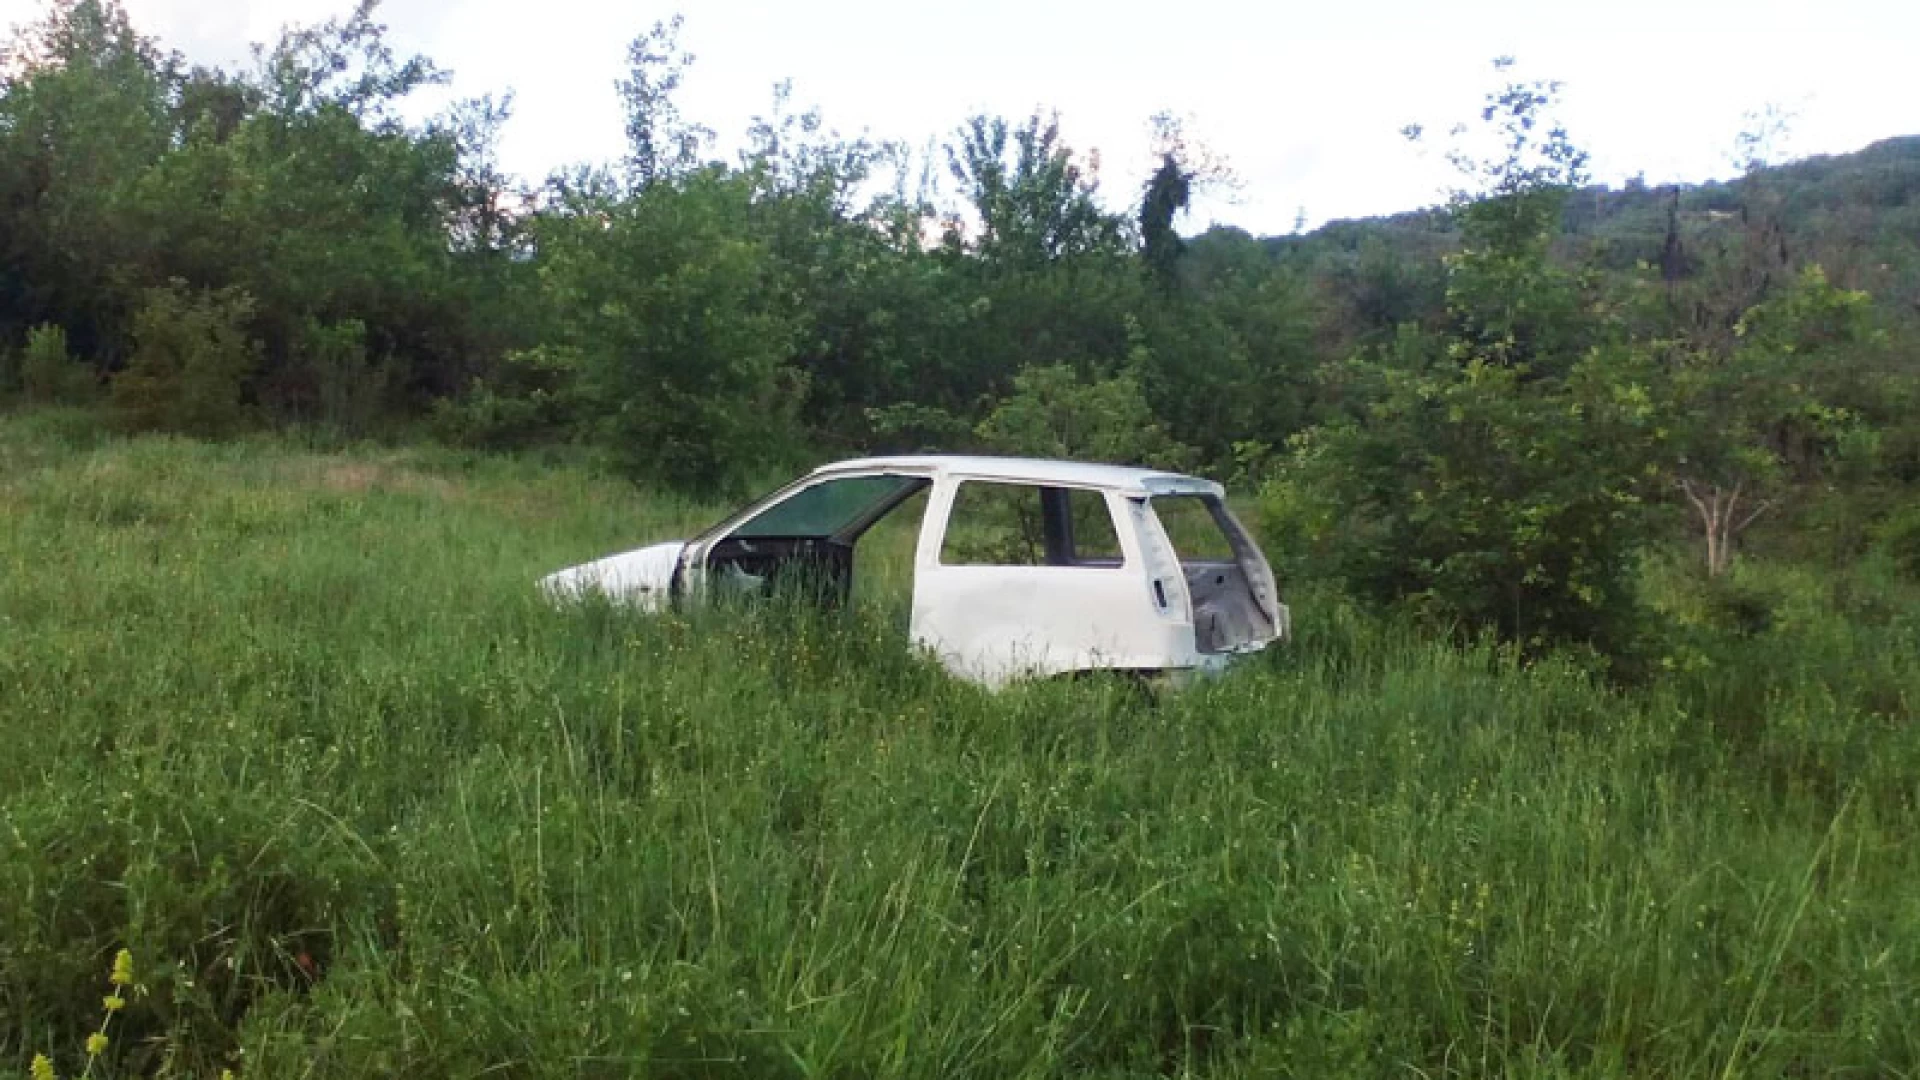 Colli a Volturno: auto abbandonata nei pressi del rio Acquoso in località Pescorosso. La segnalazione di un nostro lettore. La carcassa della vettura completamente a pezzi.